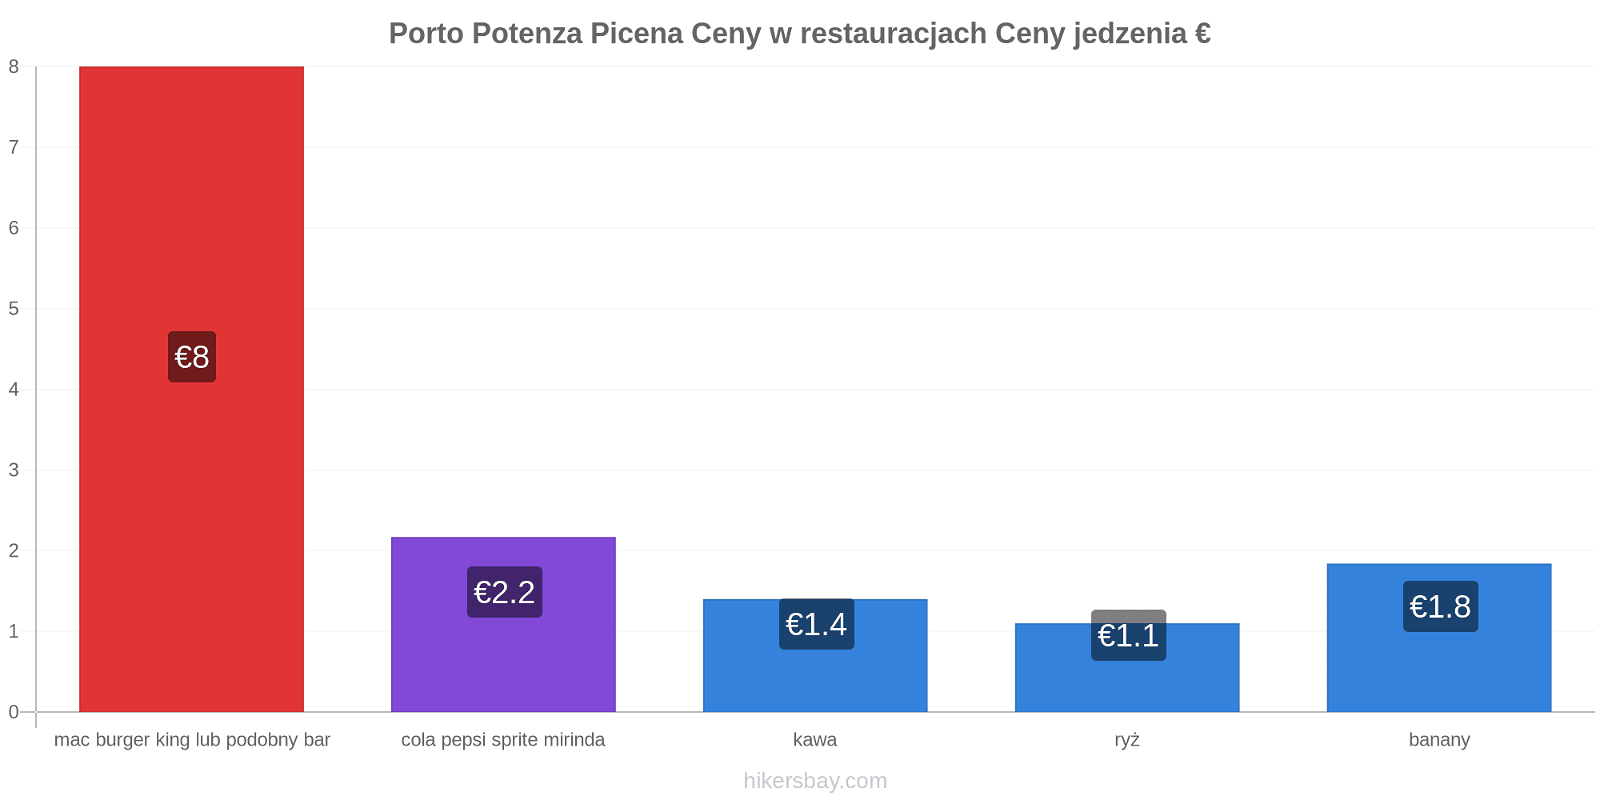 Porto Potenza Picena zmiany cen hikersbay.com